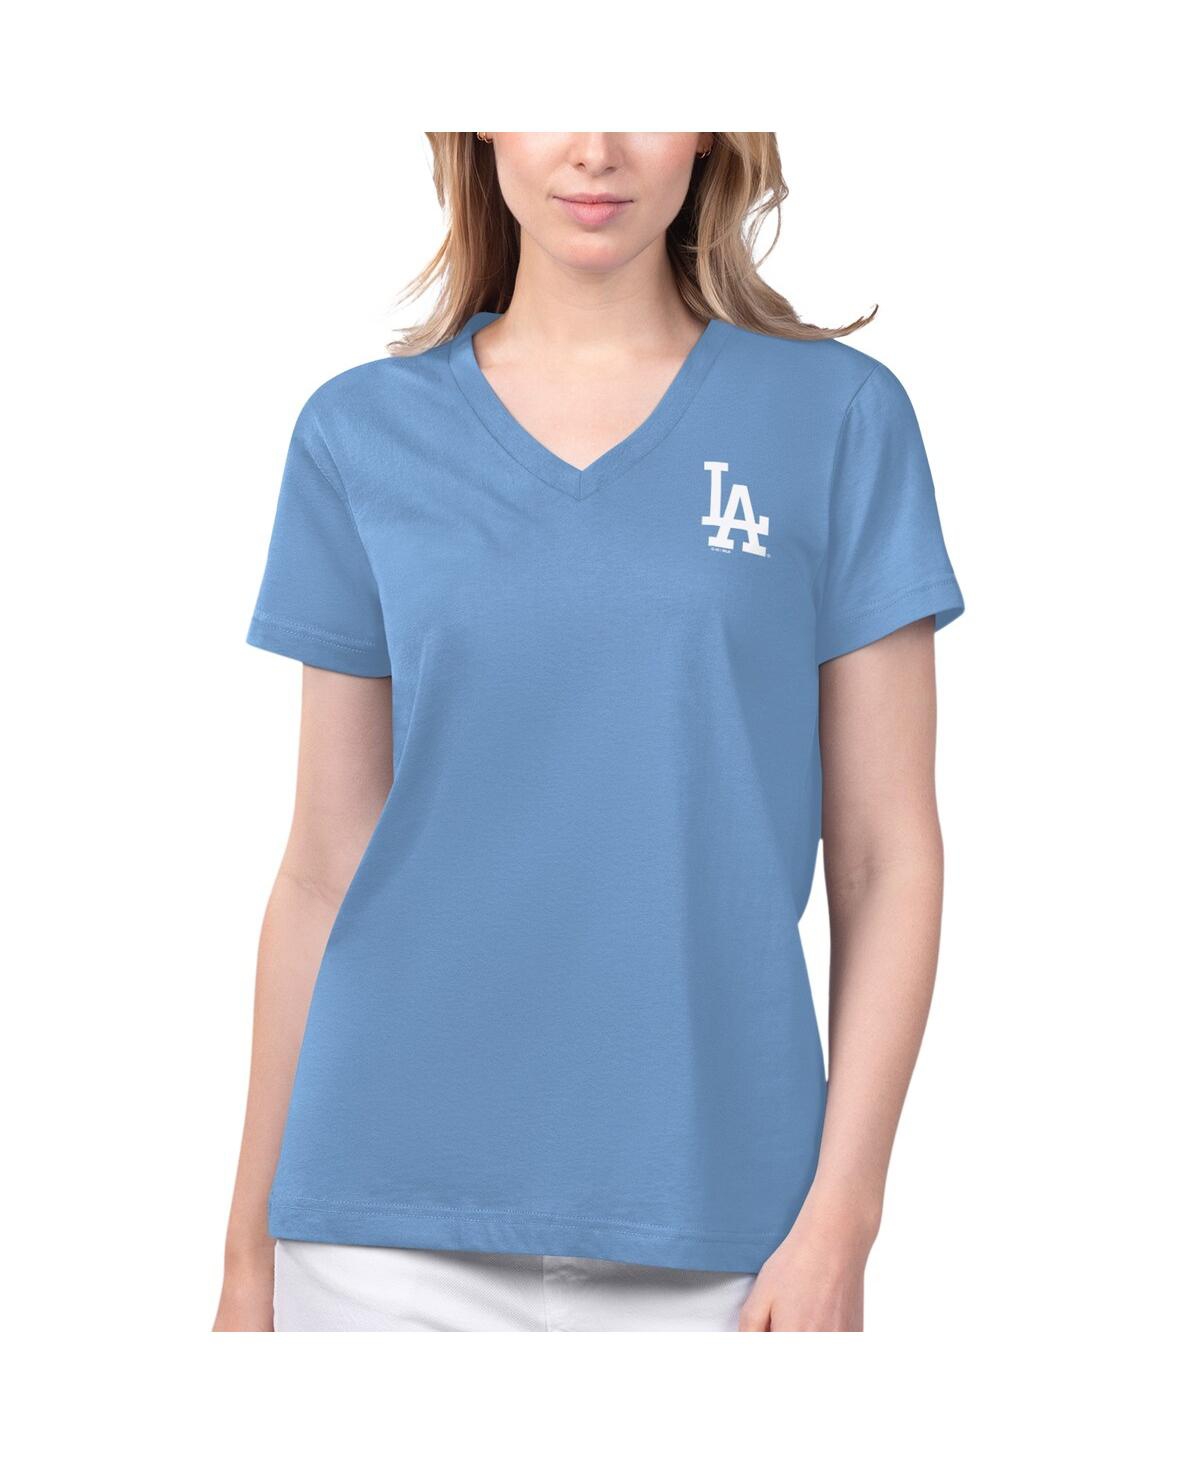 Women's Margaritaville Light Blue Los Angeles Dodgers Game Time V-Neck T-shirt - Light Blue